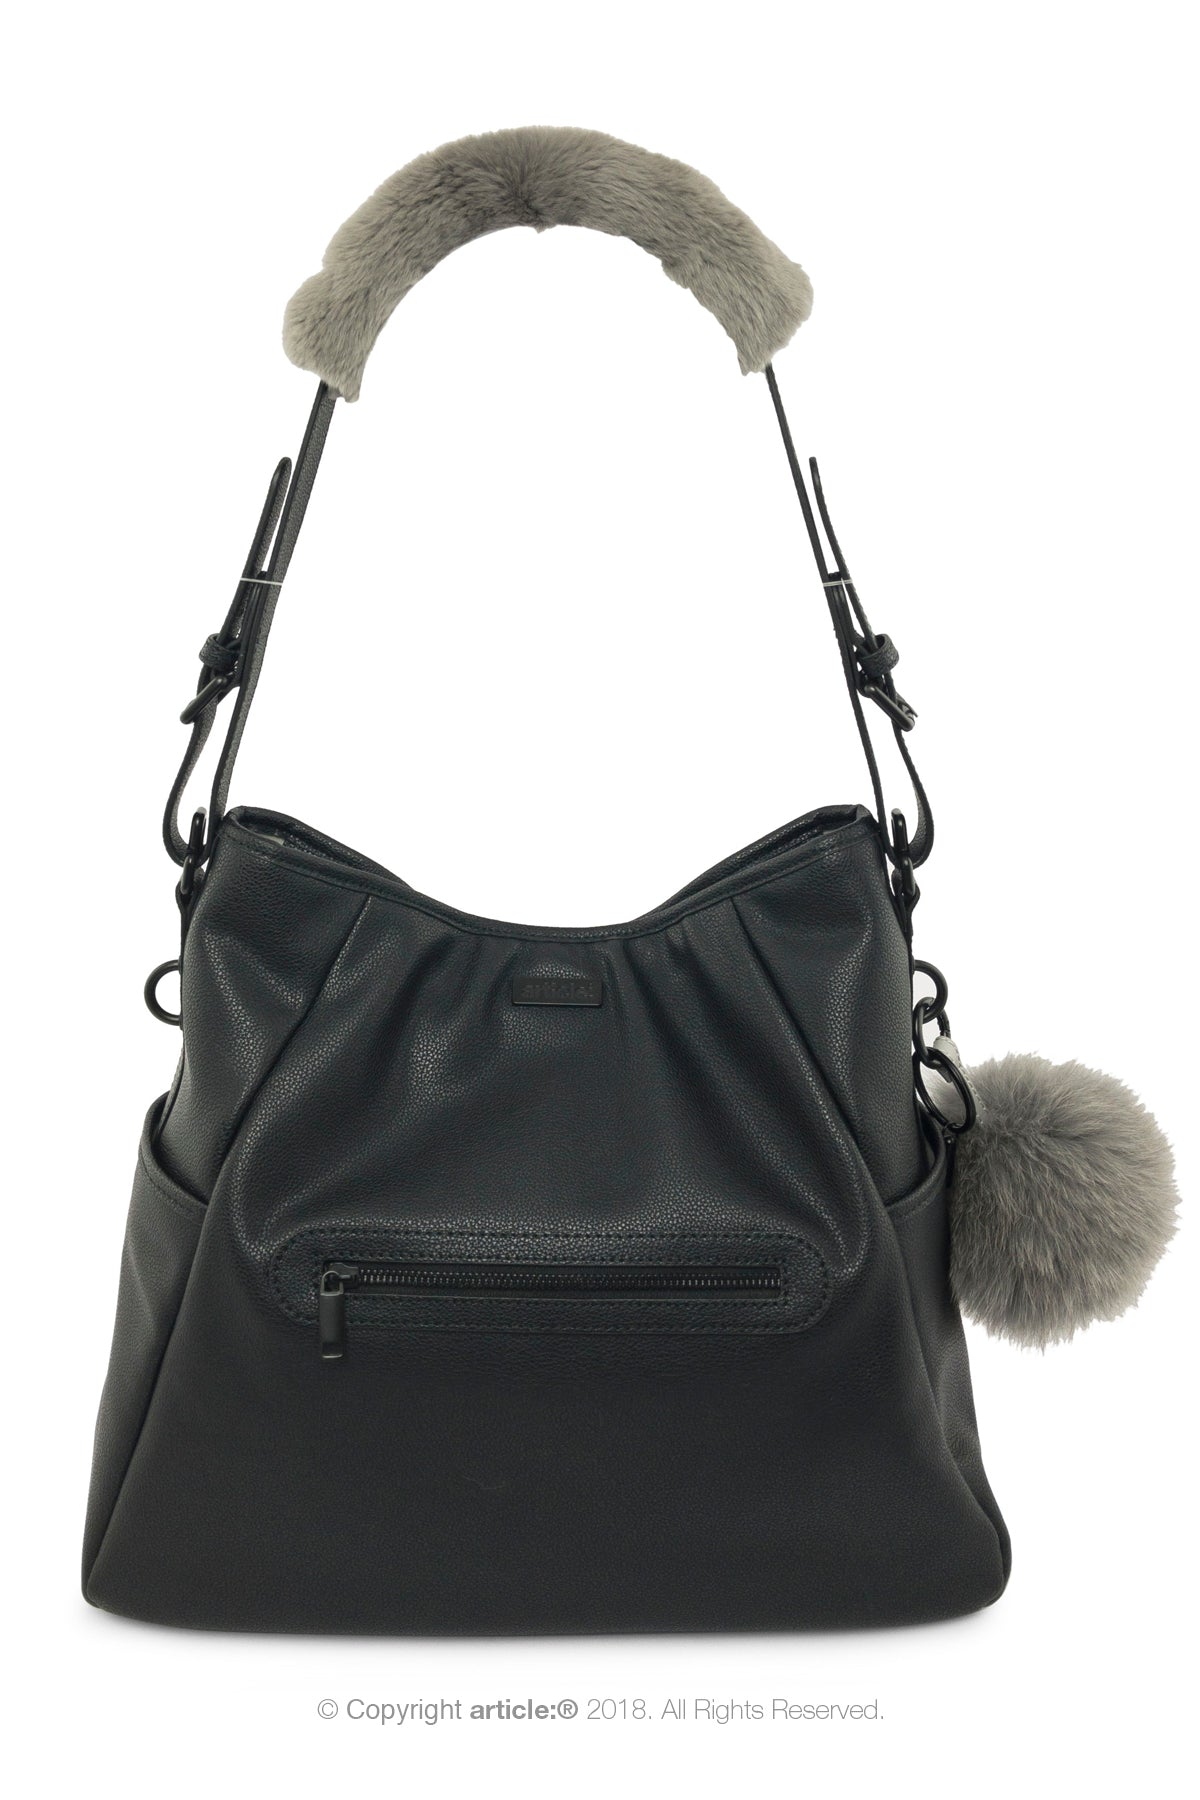 article: #130 Handbag Hobo - Noir